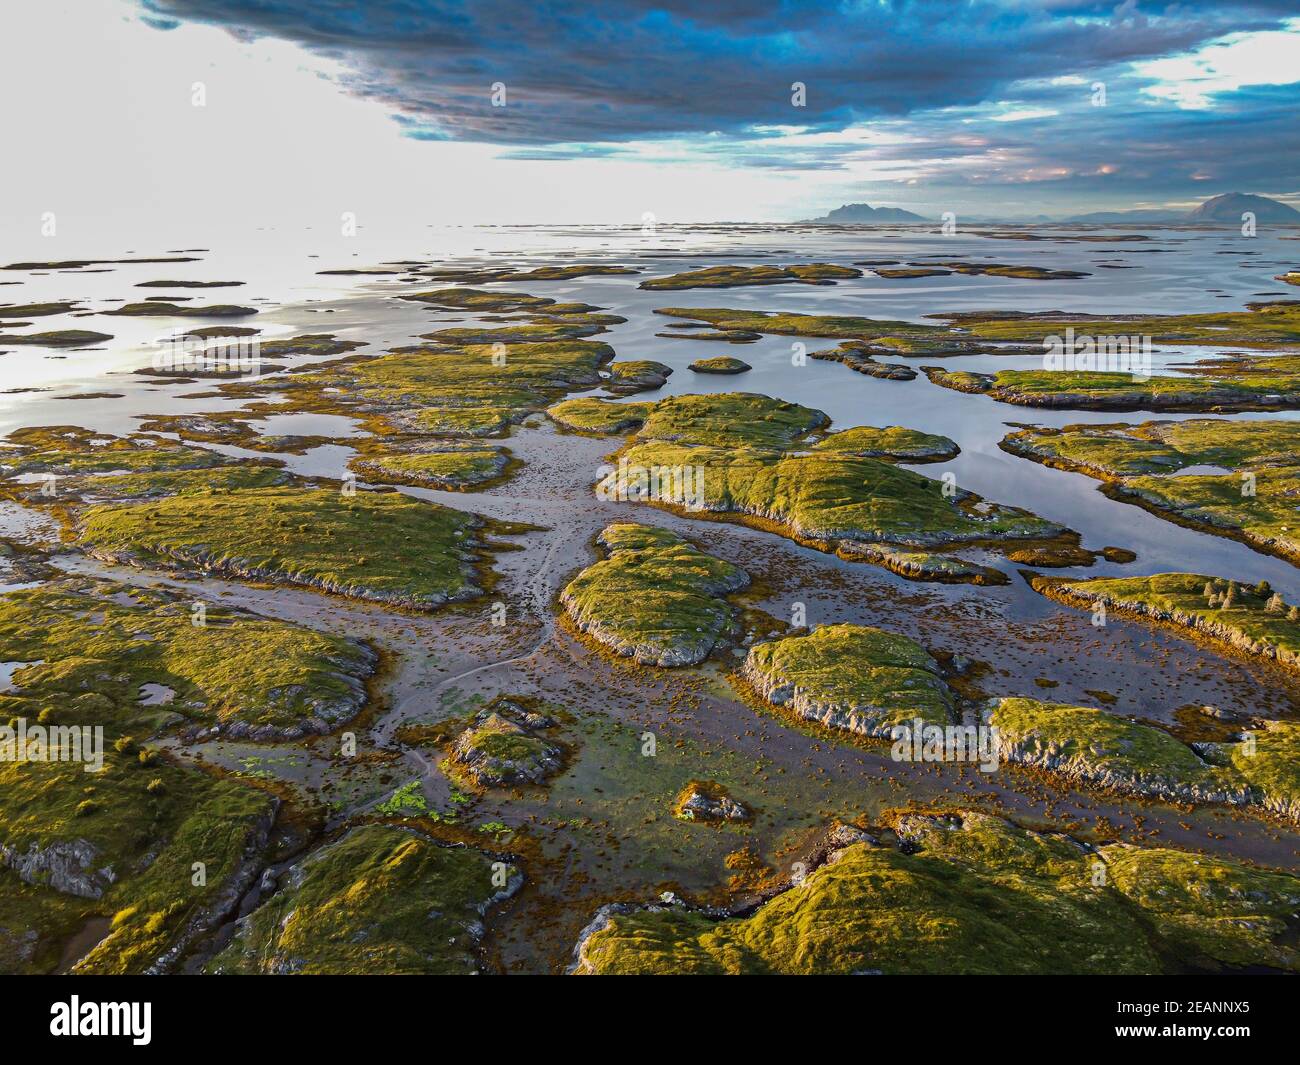 Aereo della costa frastagliata del sito patrimonio dell'umanità dell'UNESCO al tramonto, l'arcipelago di Vega, Norvegia, Scandinavia, Europa Foto Stock